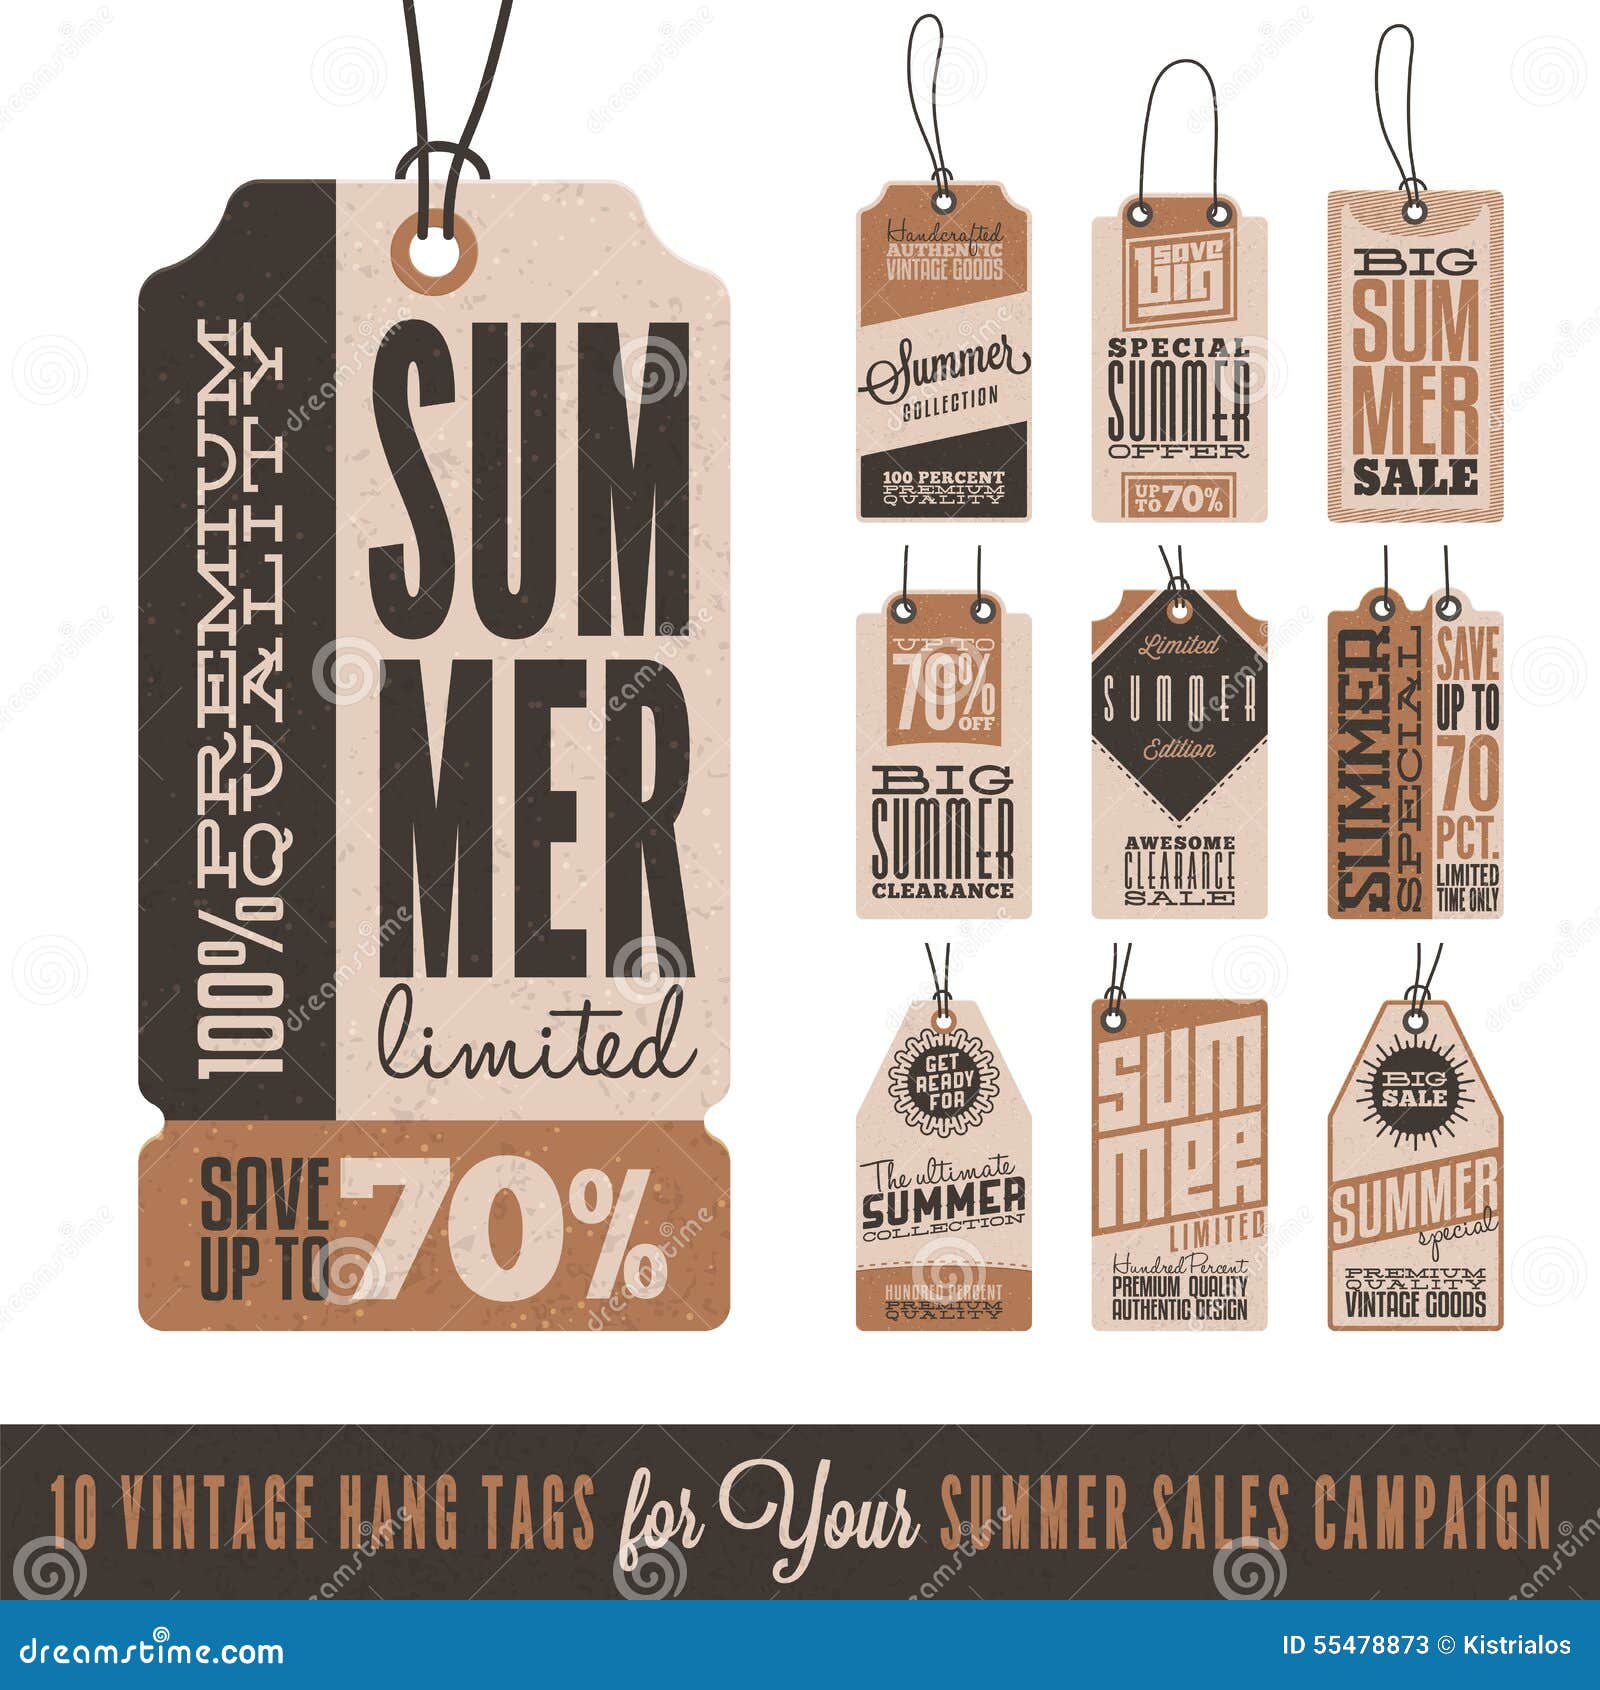 summer sales hang tags